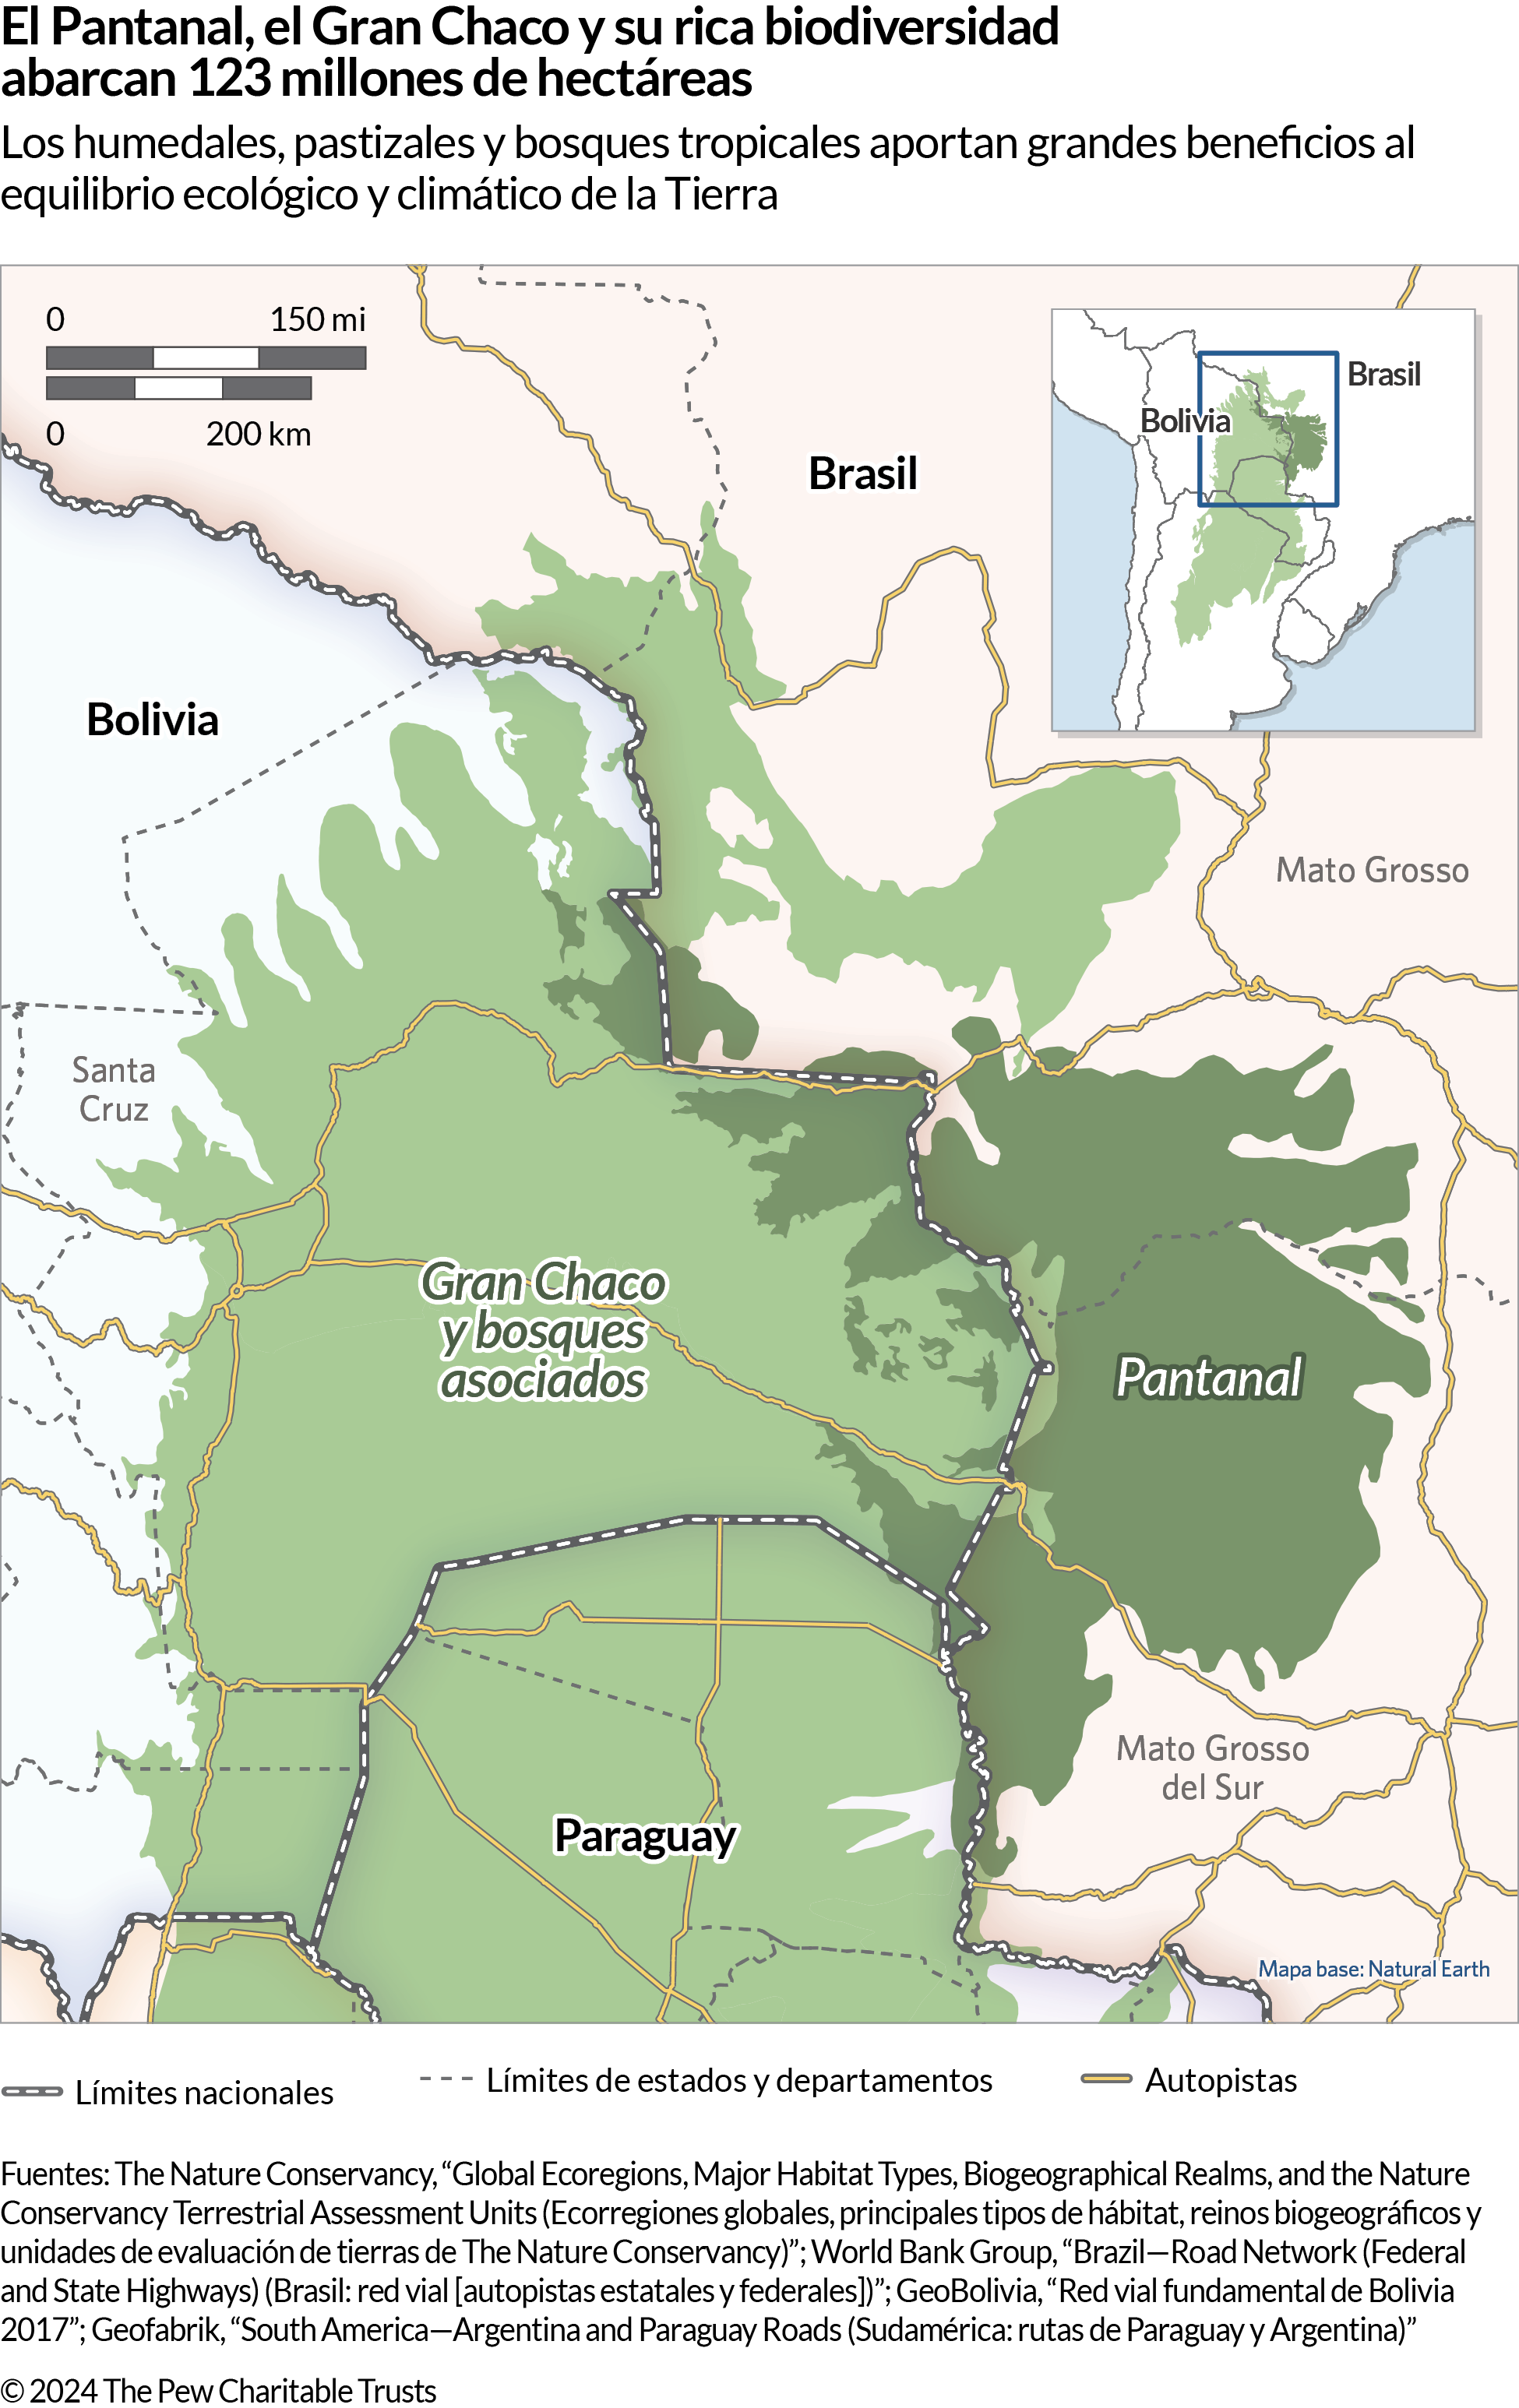 Un mapa que muestra una parte de Sudamérica, concretamente donde las fronteras de Bolivia, Brasil y Paraguay se juntan. El área de la derecha, sombreada en verde oscuro, está etiquetada como “Pantanal” y el área más grande sombreada en verde más claro “Gran Chaco y bosques asociados”. El mapa también muestra las principales autopistas y algunos estados y departamentos de Brasil y Bolivia. 